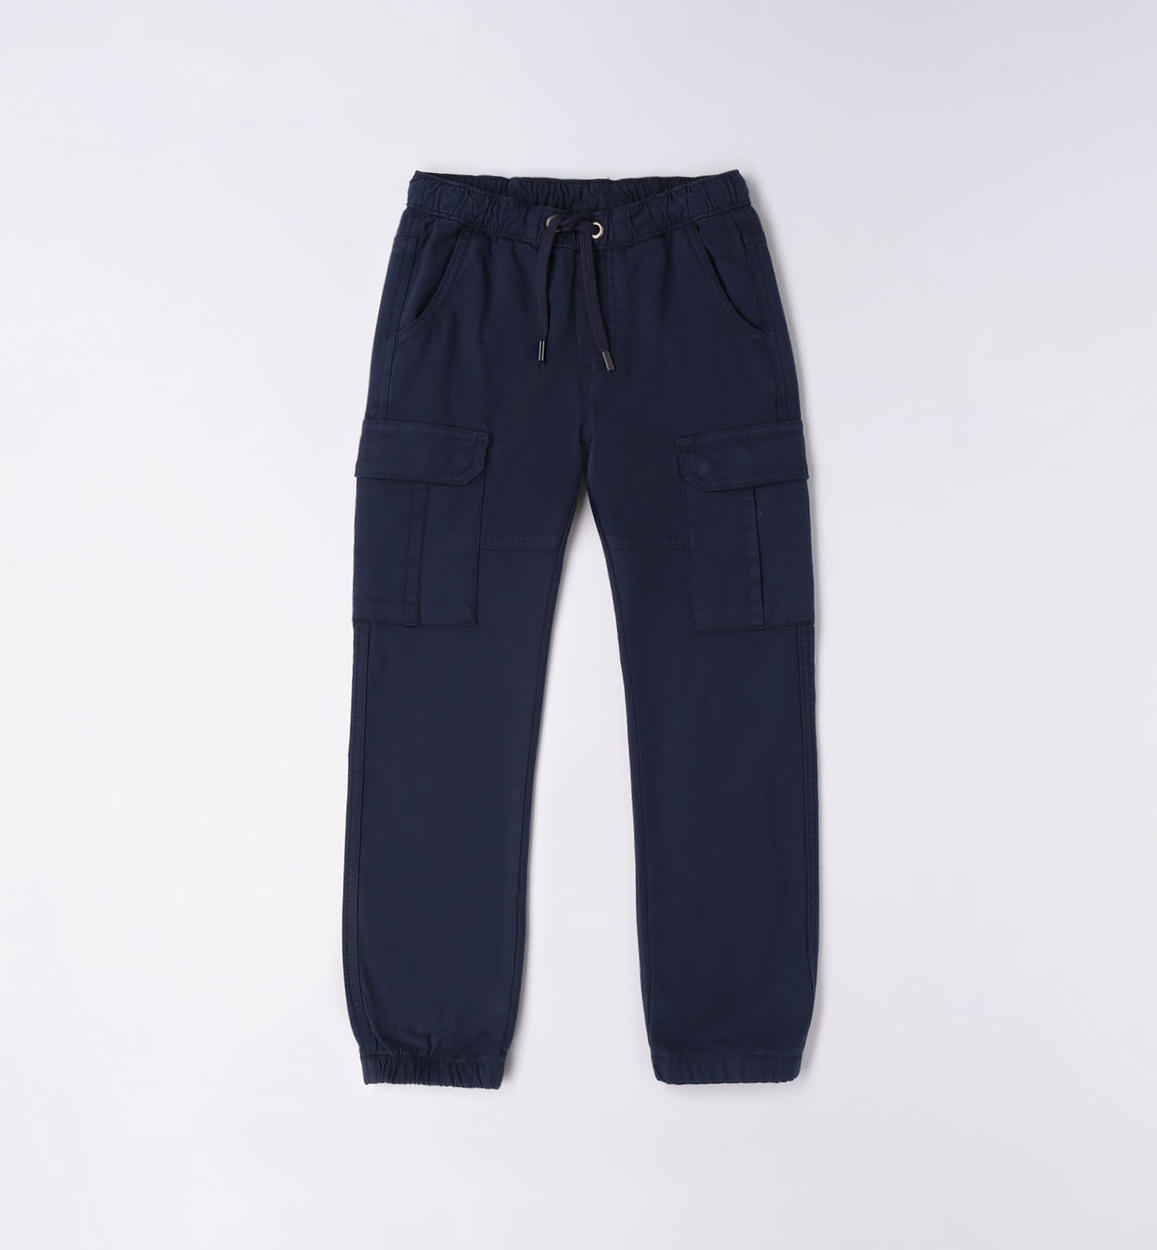 Boys Cargo Pants PDF Sewing Pattern - PATTERN EMPORIUM